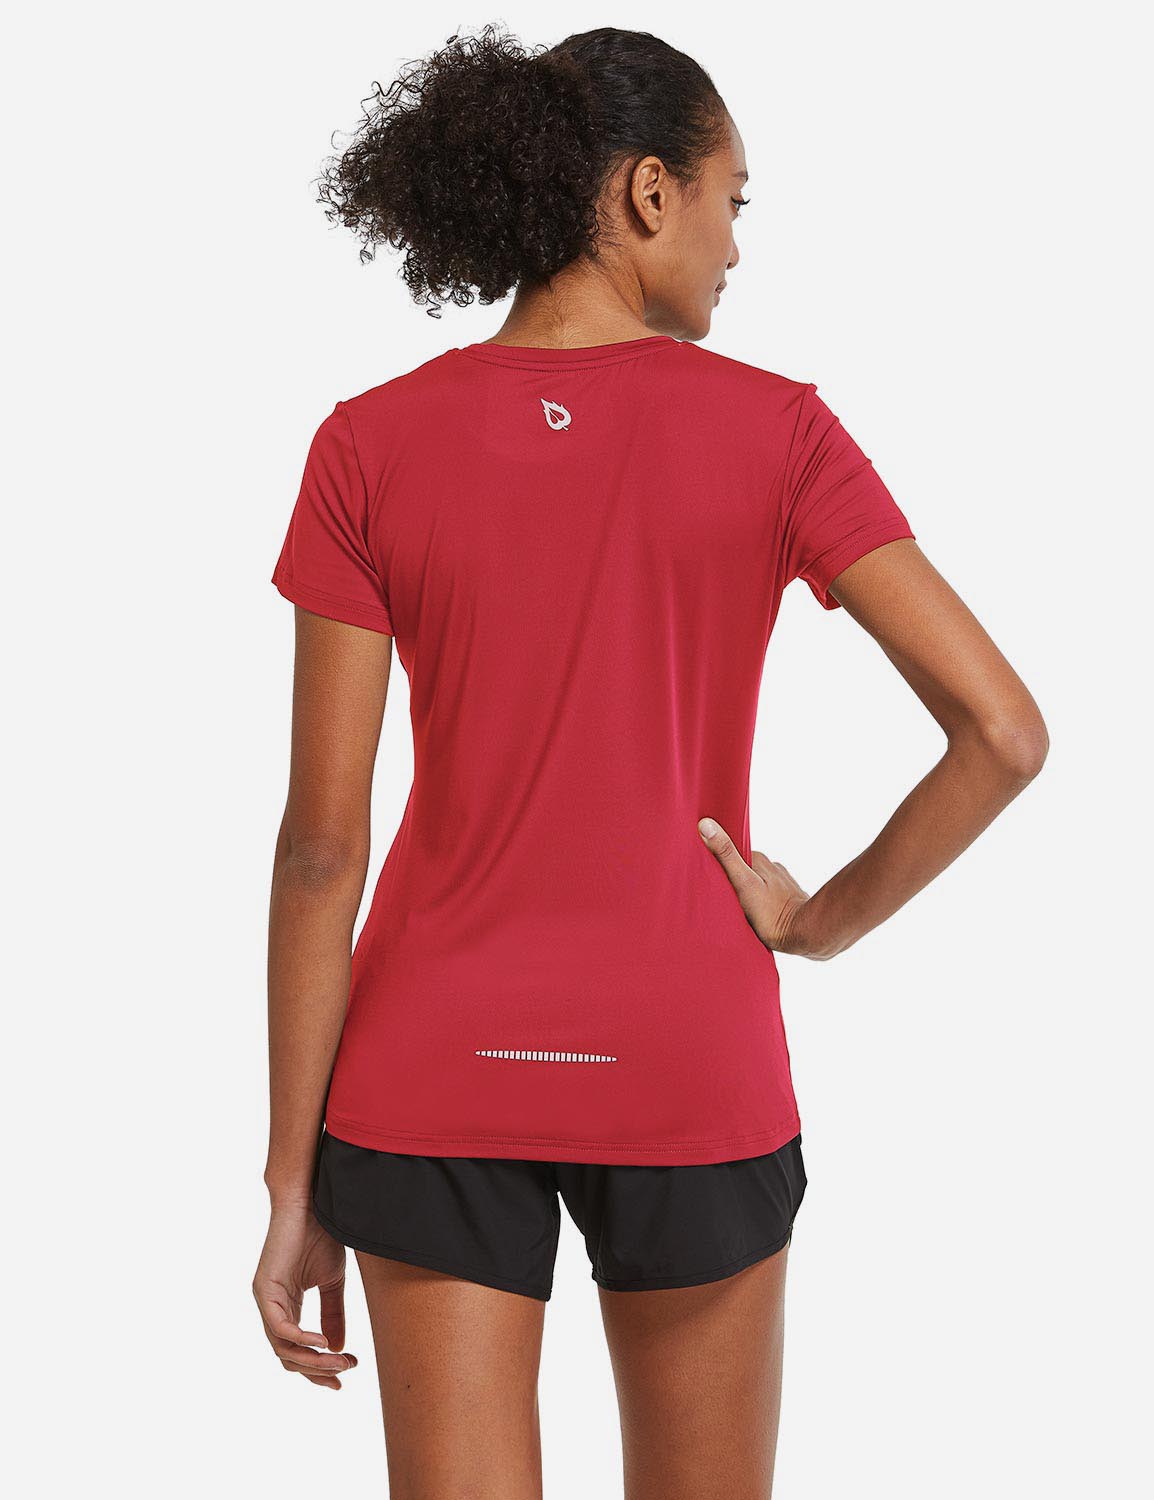 Baleaf Women's Baleaf Crew neck Comfort Fit Workout T-Shirt abd349 Red Back